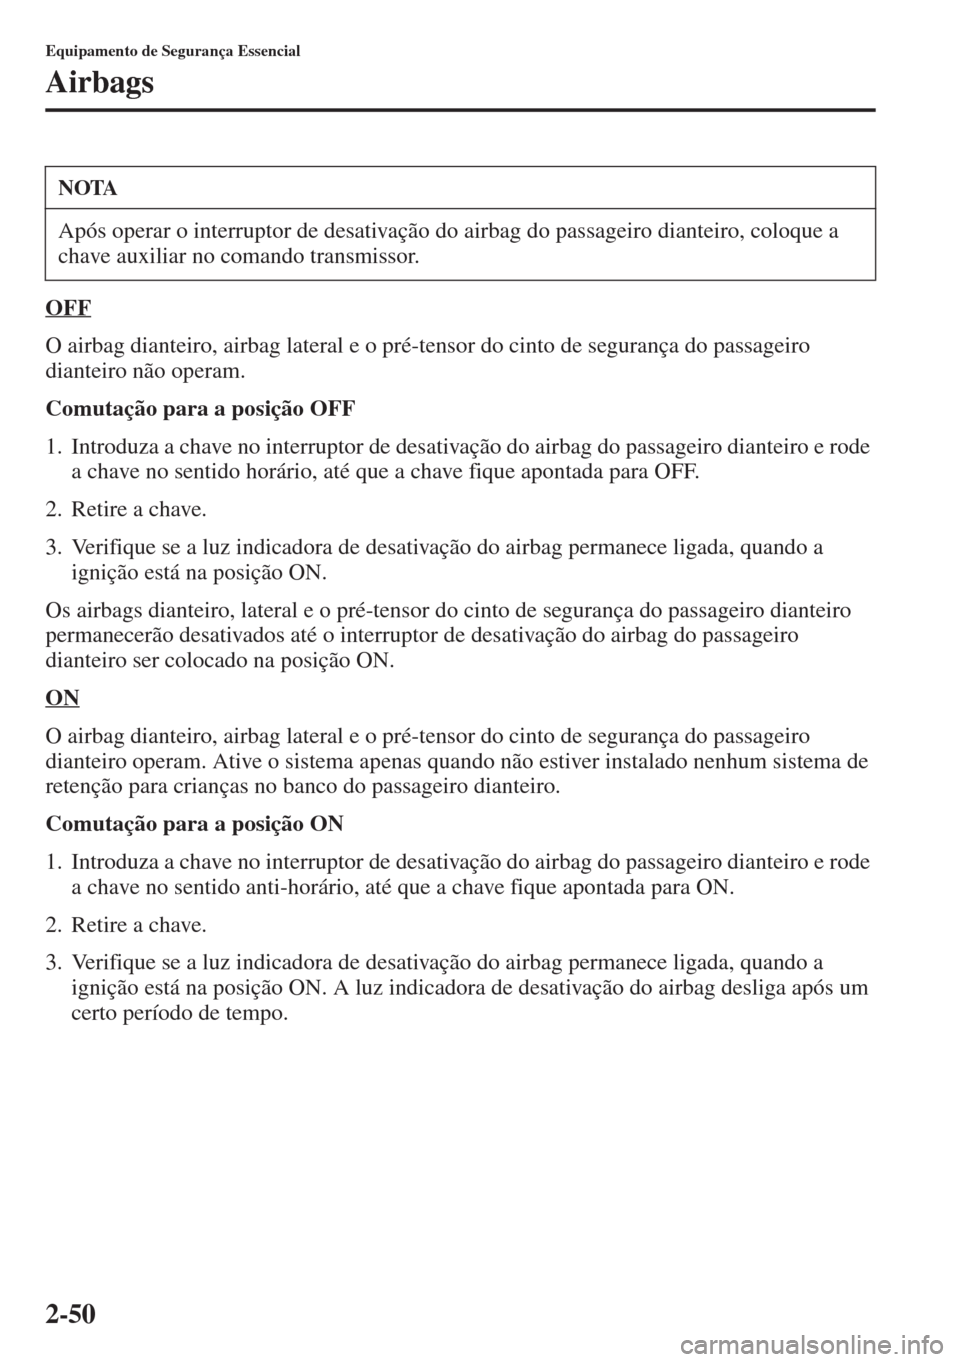 MAZDA MODEL CX-5 2015  Manual do proprietário (in Portuguese) 2-50
Equipamento de Segurança Essencial
Airbags
OFF
O airbag dianteiro, airbag lateral e o pré-tensor do cinto de segurança do passageiro 
dianteiro não operam.
Comutação para a posição OFF
1.